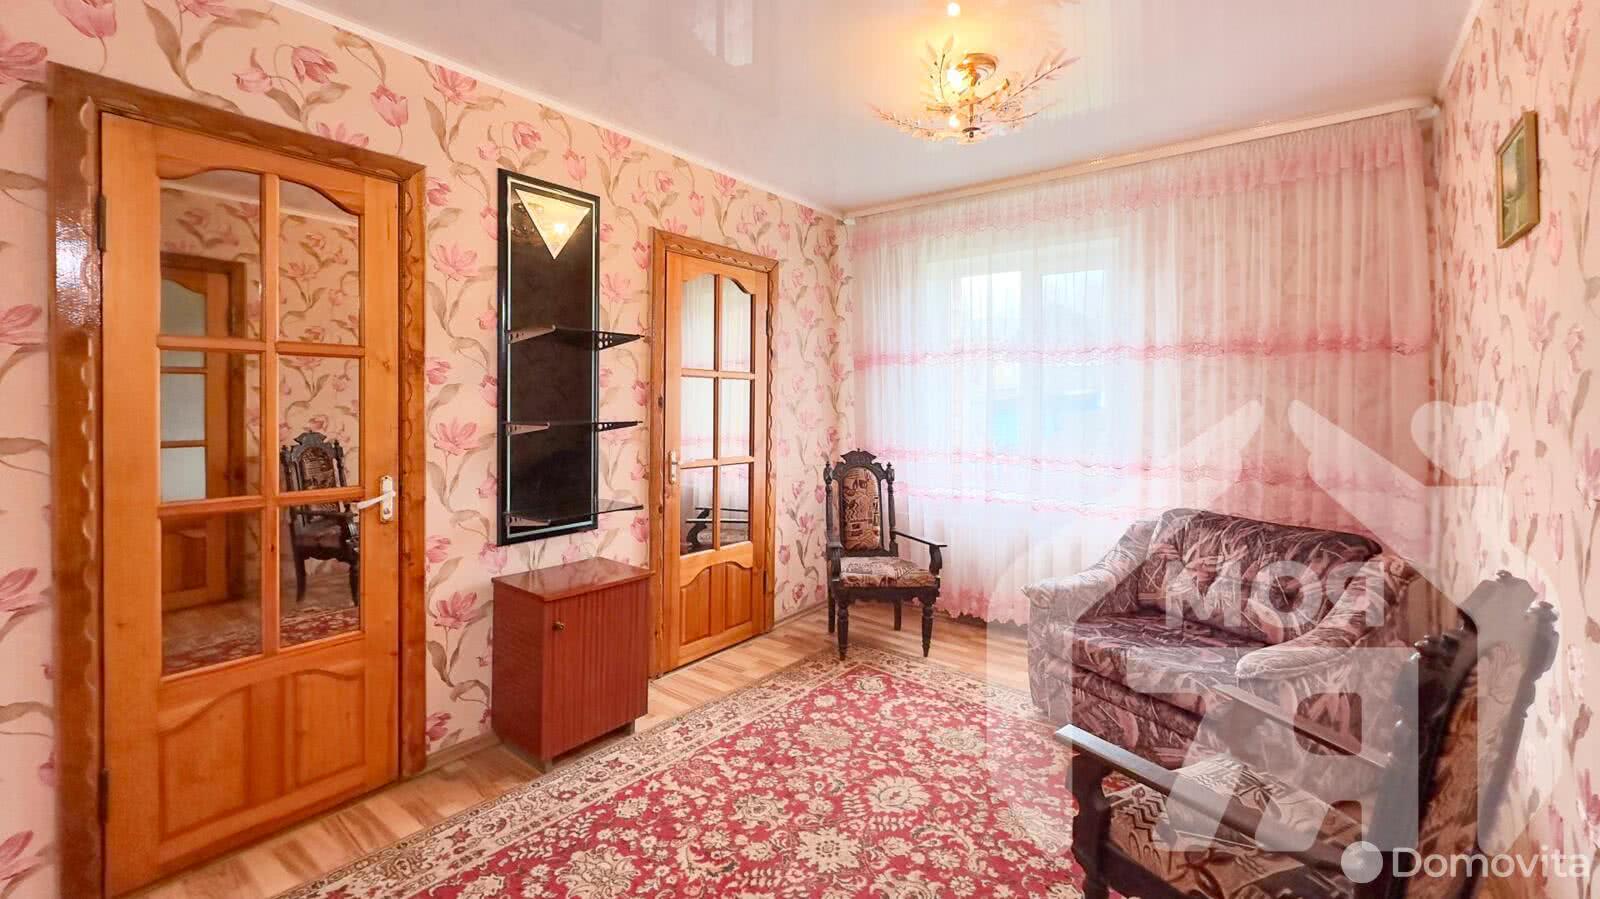 дом, Углы, ул. Московское Шоссе, стоимость продажи 256 399 р.